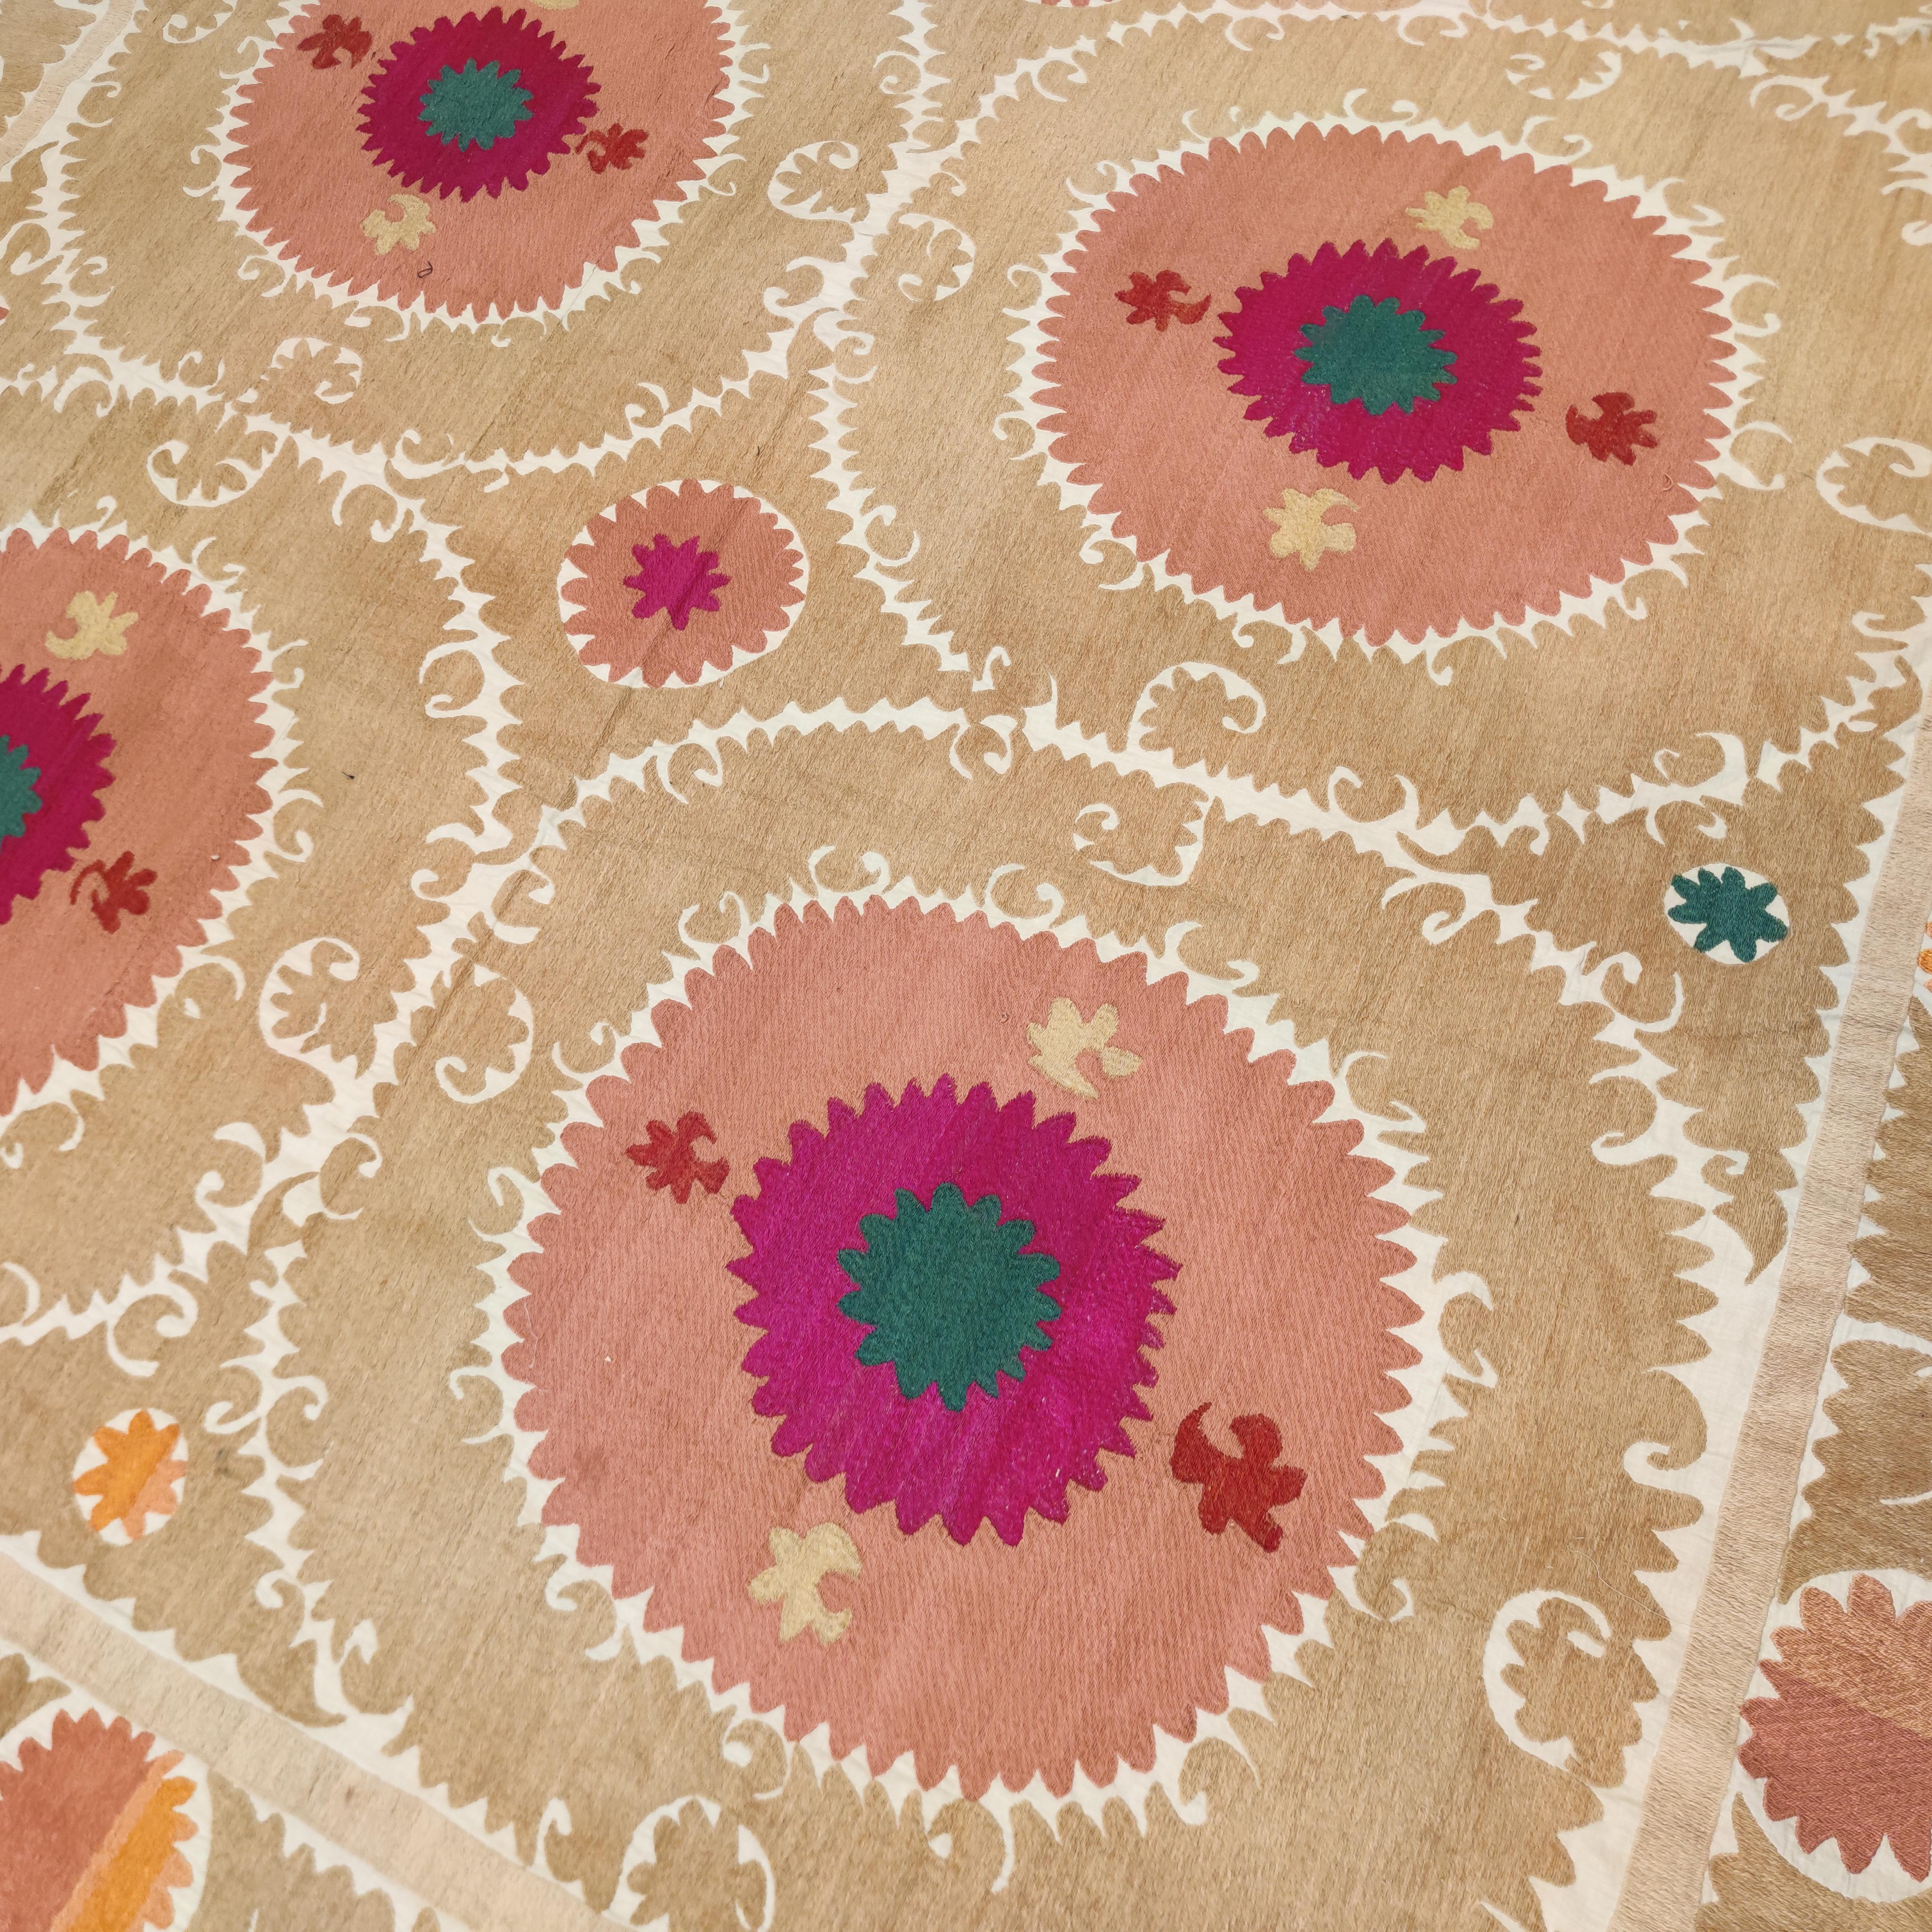 Die Suzani-Textilien aus Usbekistan sind die raffinierteste und eleganteste Erscheinungsform der zentralasiatischen Textilkunsttradition. Exquisite Stickereien wie diese wurden von jungen Frauen gewebt, um ihre Mitgift zu bereichern, weshalb sie